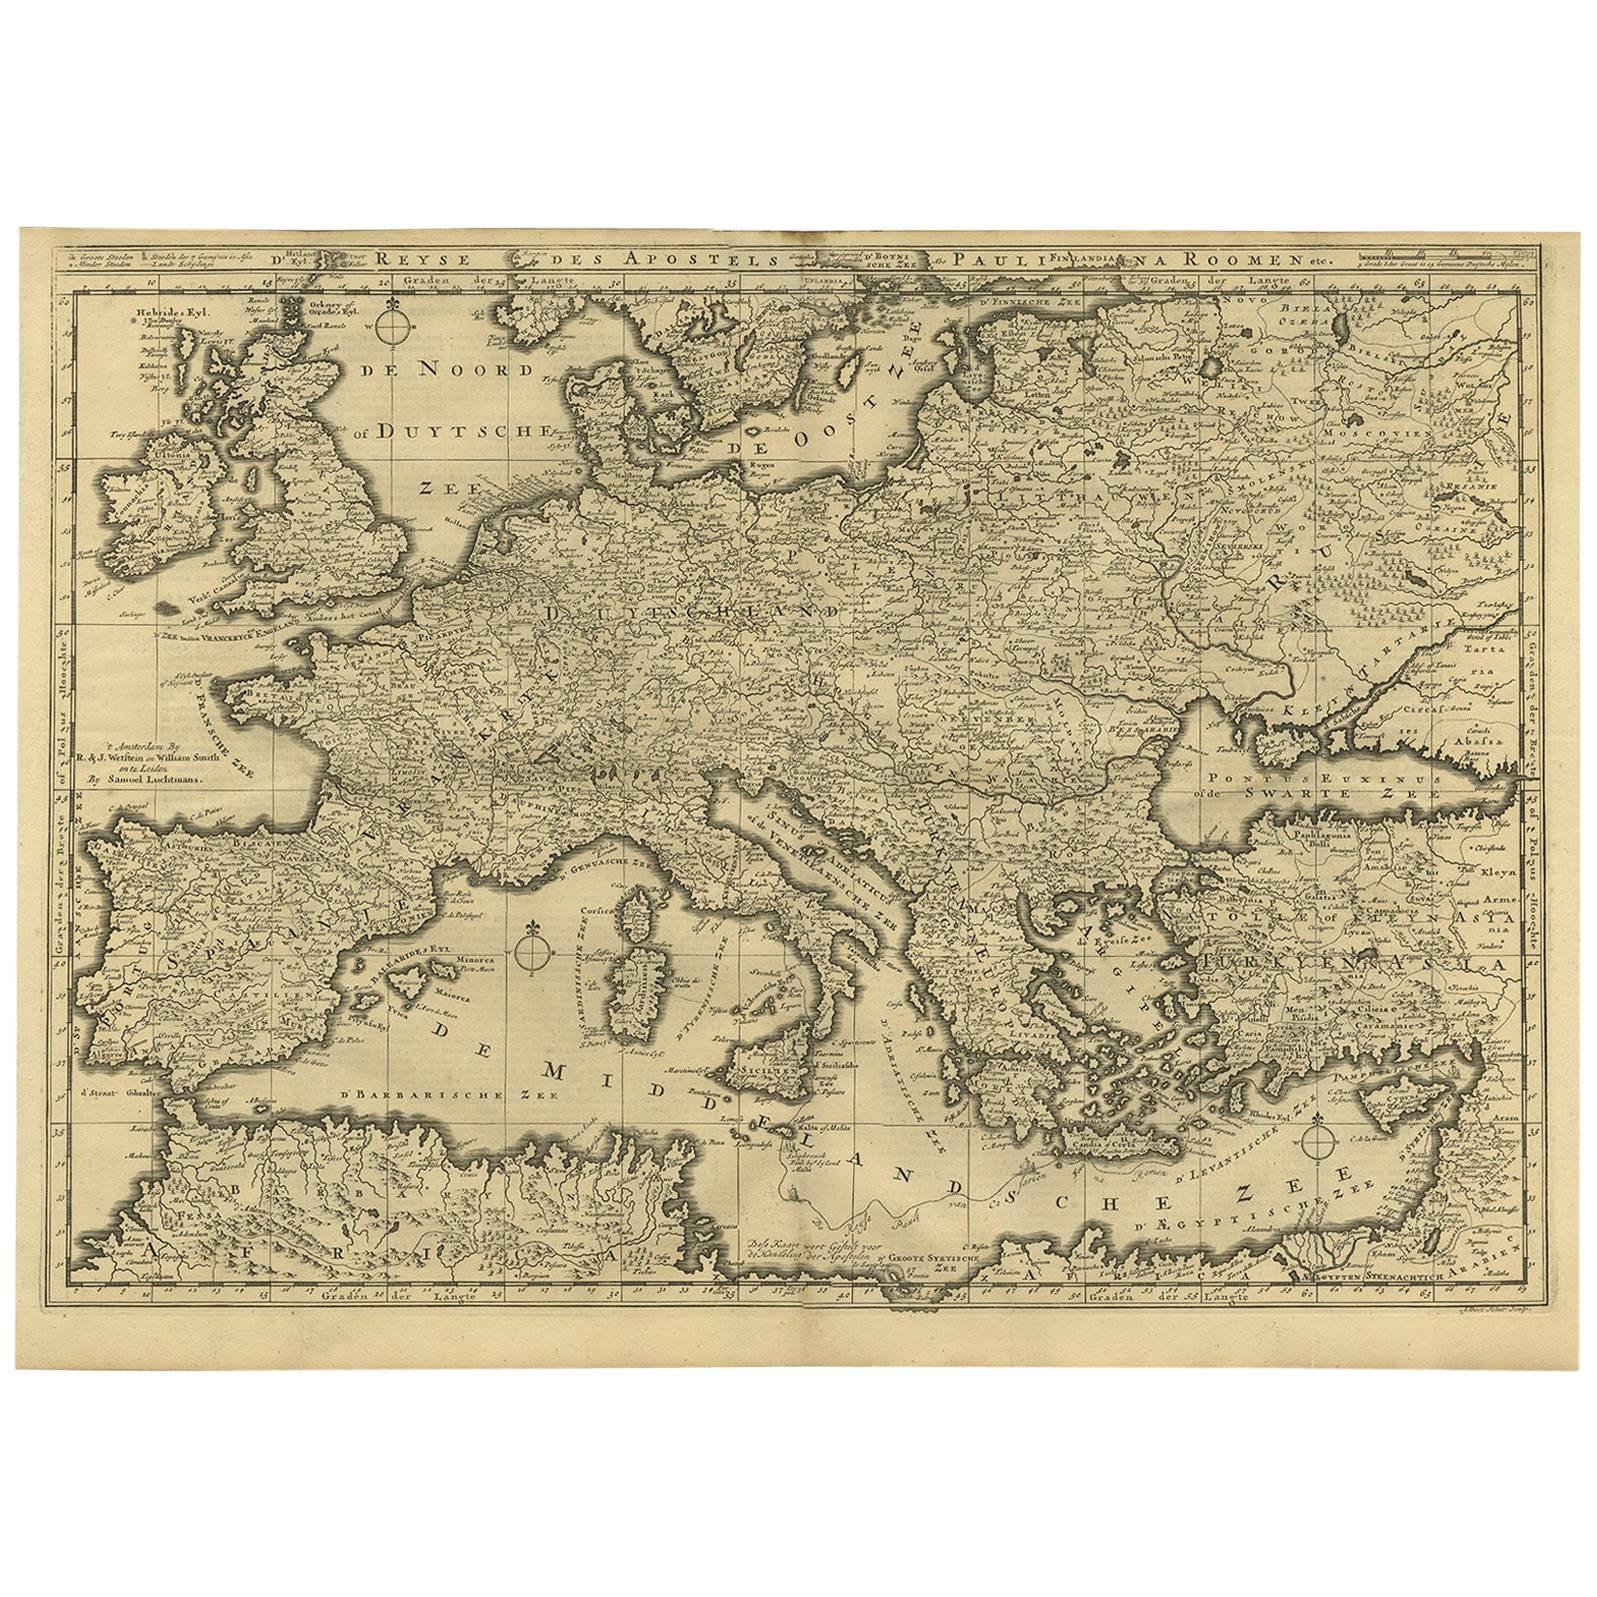 Seltene antike Bibelkarte von Südeuropa von A. Schut, 1743